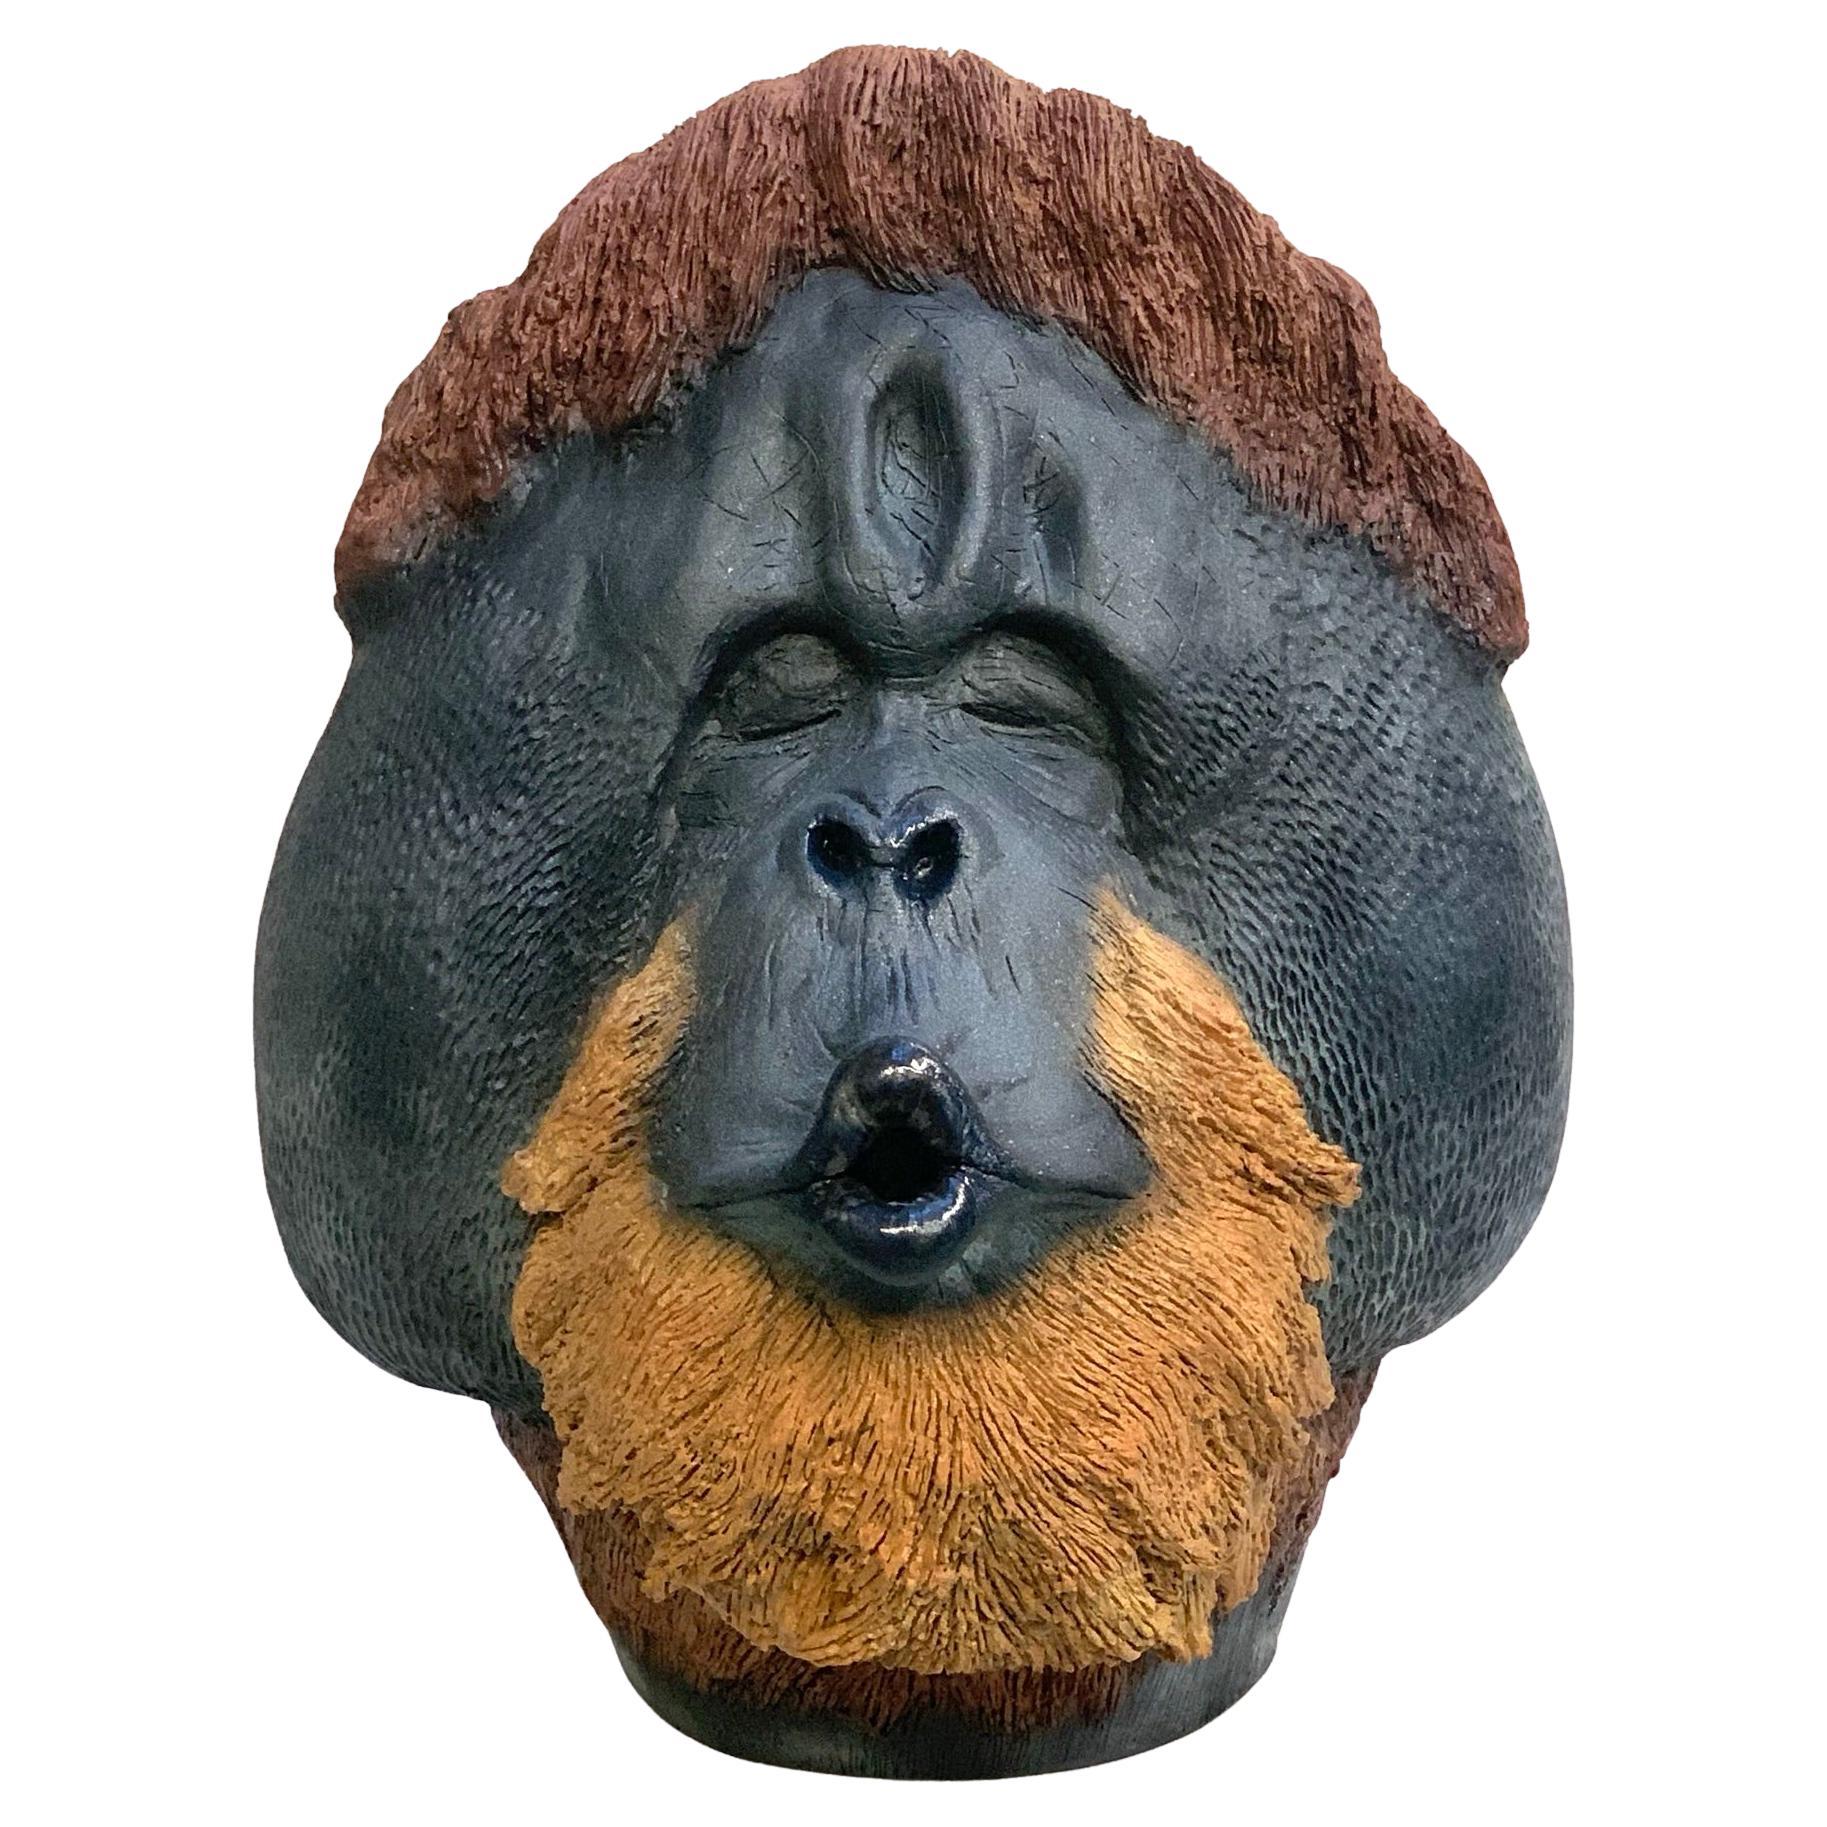 Das Stück ist eine einzigartige Darstellung eines Schimpansen in einer modernen Form. Das Tier ist sanft mit einer cremefarbenen Farbe bemalt.
Unser Designer fertigt diese Stücke vollständig von Hand an.
 